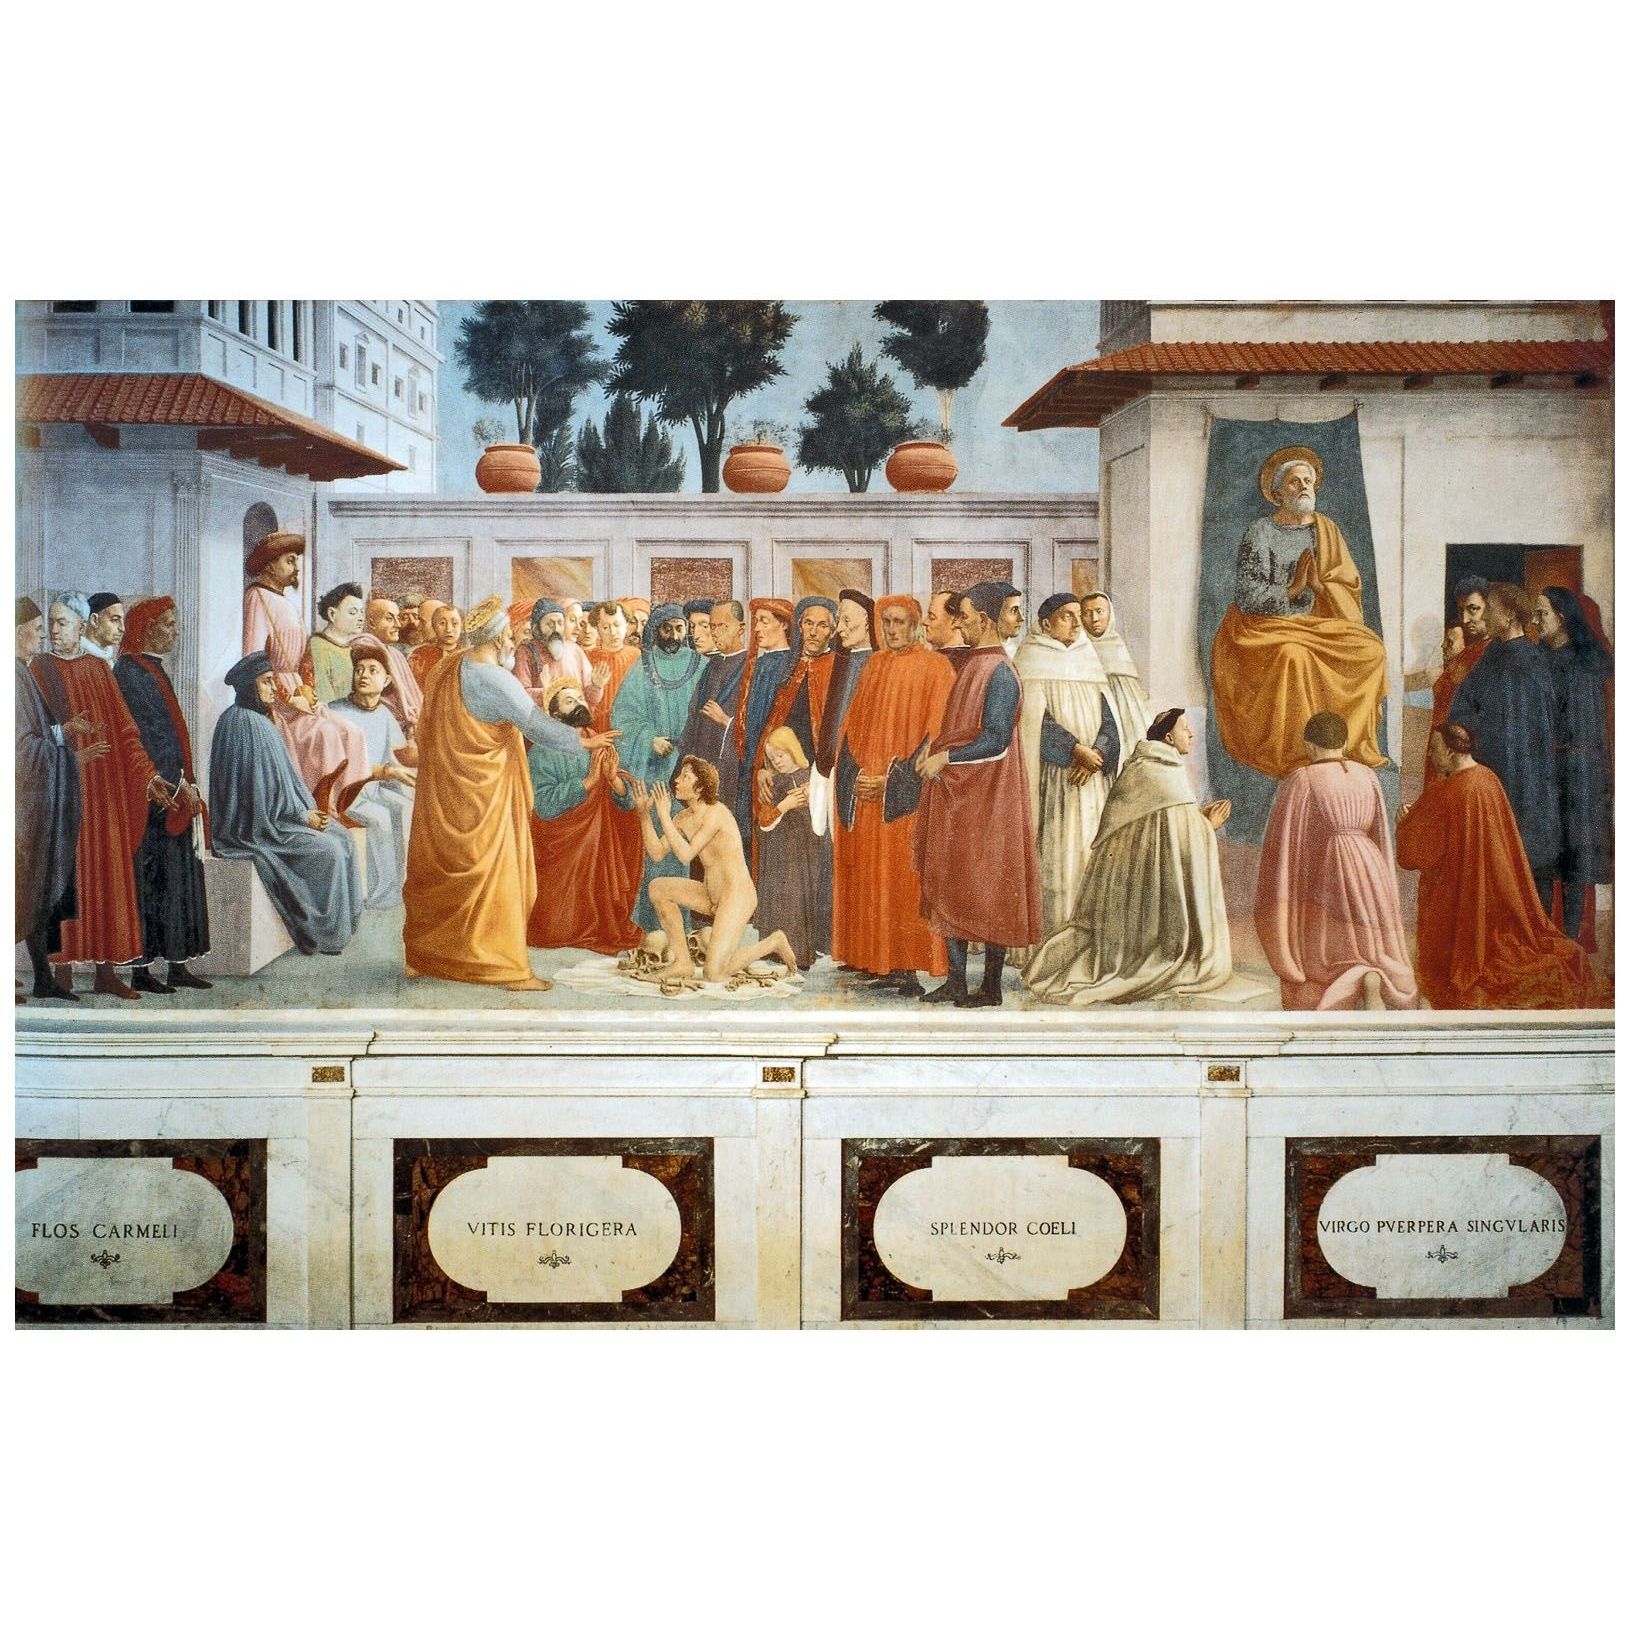 Мазаччо. Воскрешение сына Теофила и Св. Петр на кафедре. 1427. Капелла Бранкаччи